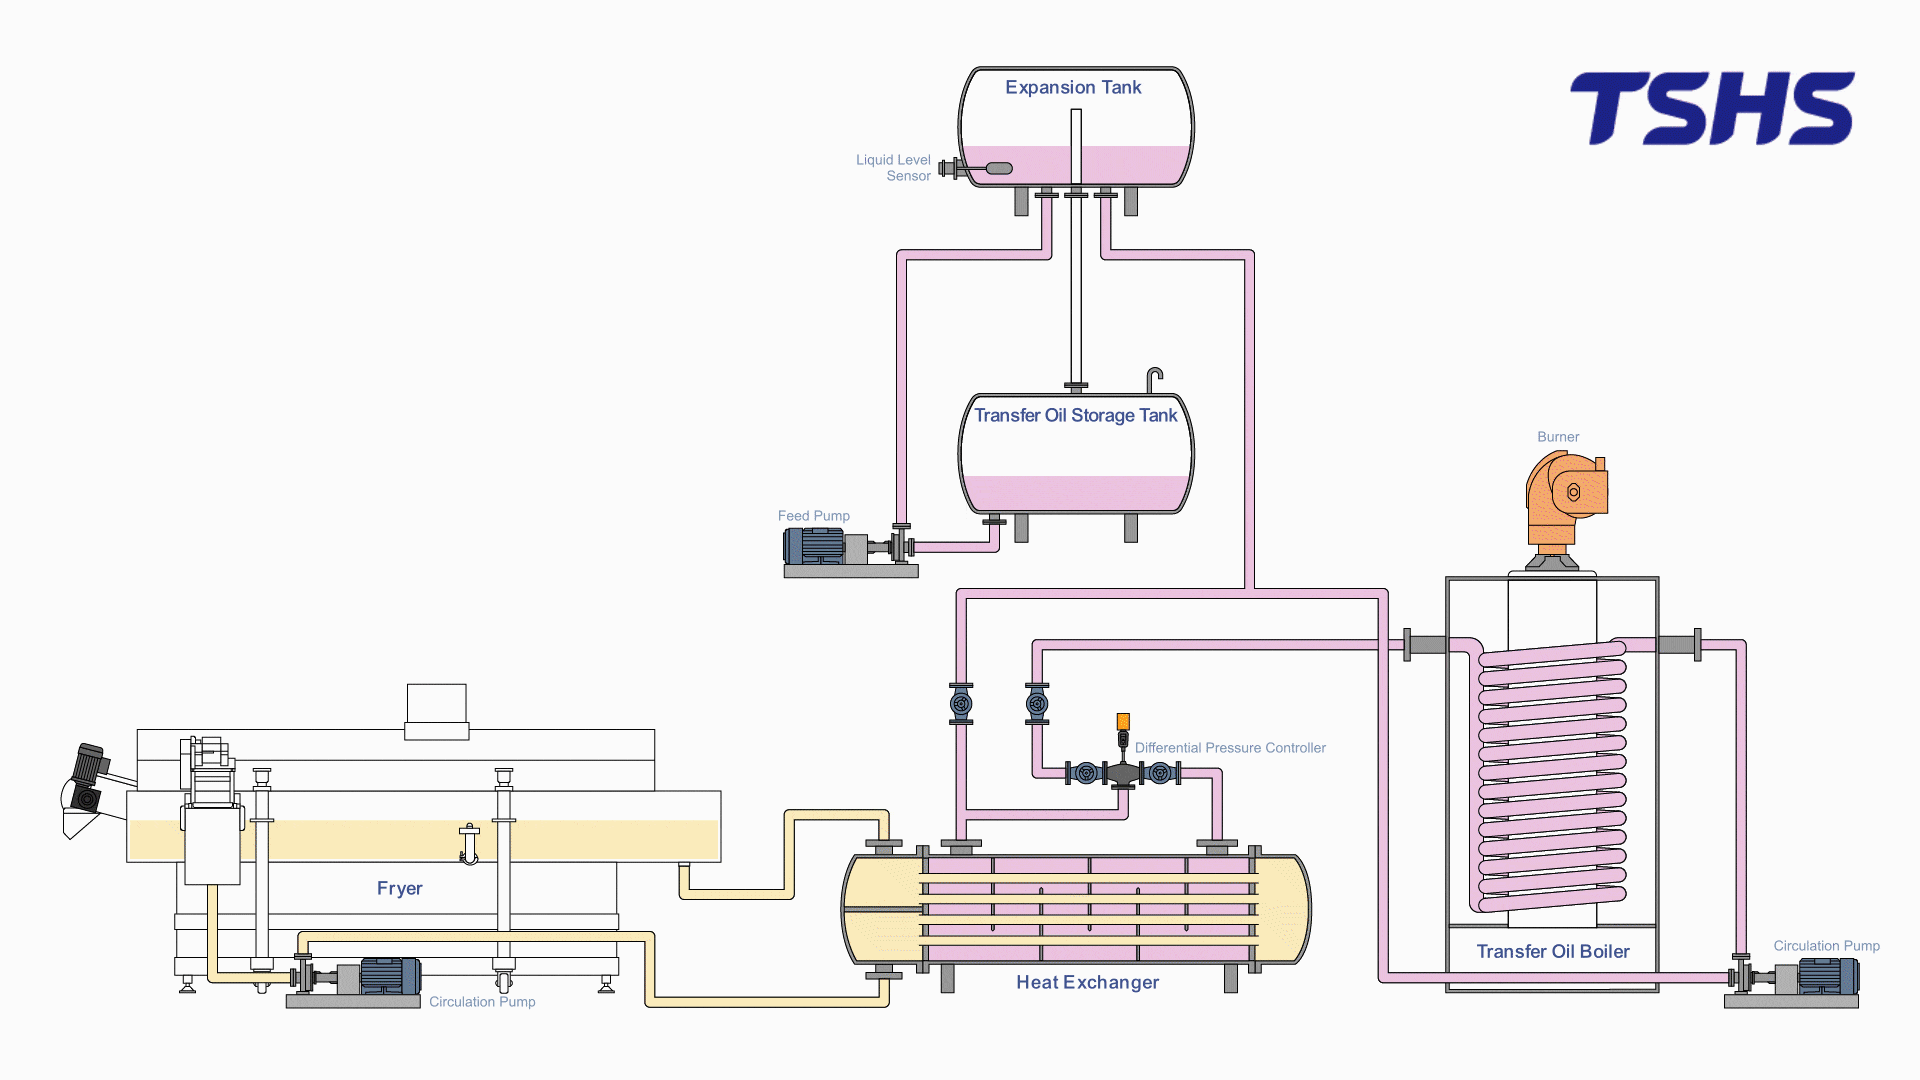 System ogrzewania wymiennika ciepła - Uzupełnienie zbiornika rozszerzeniowego